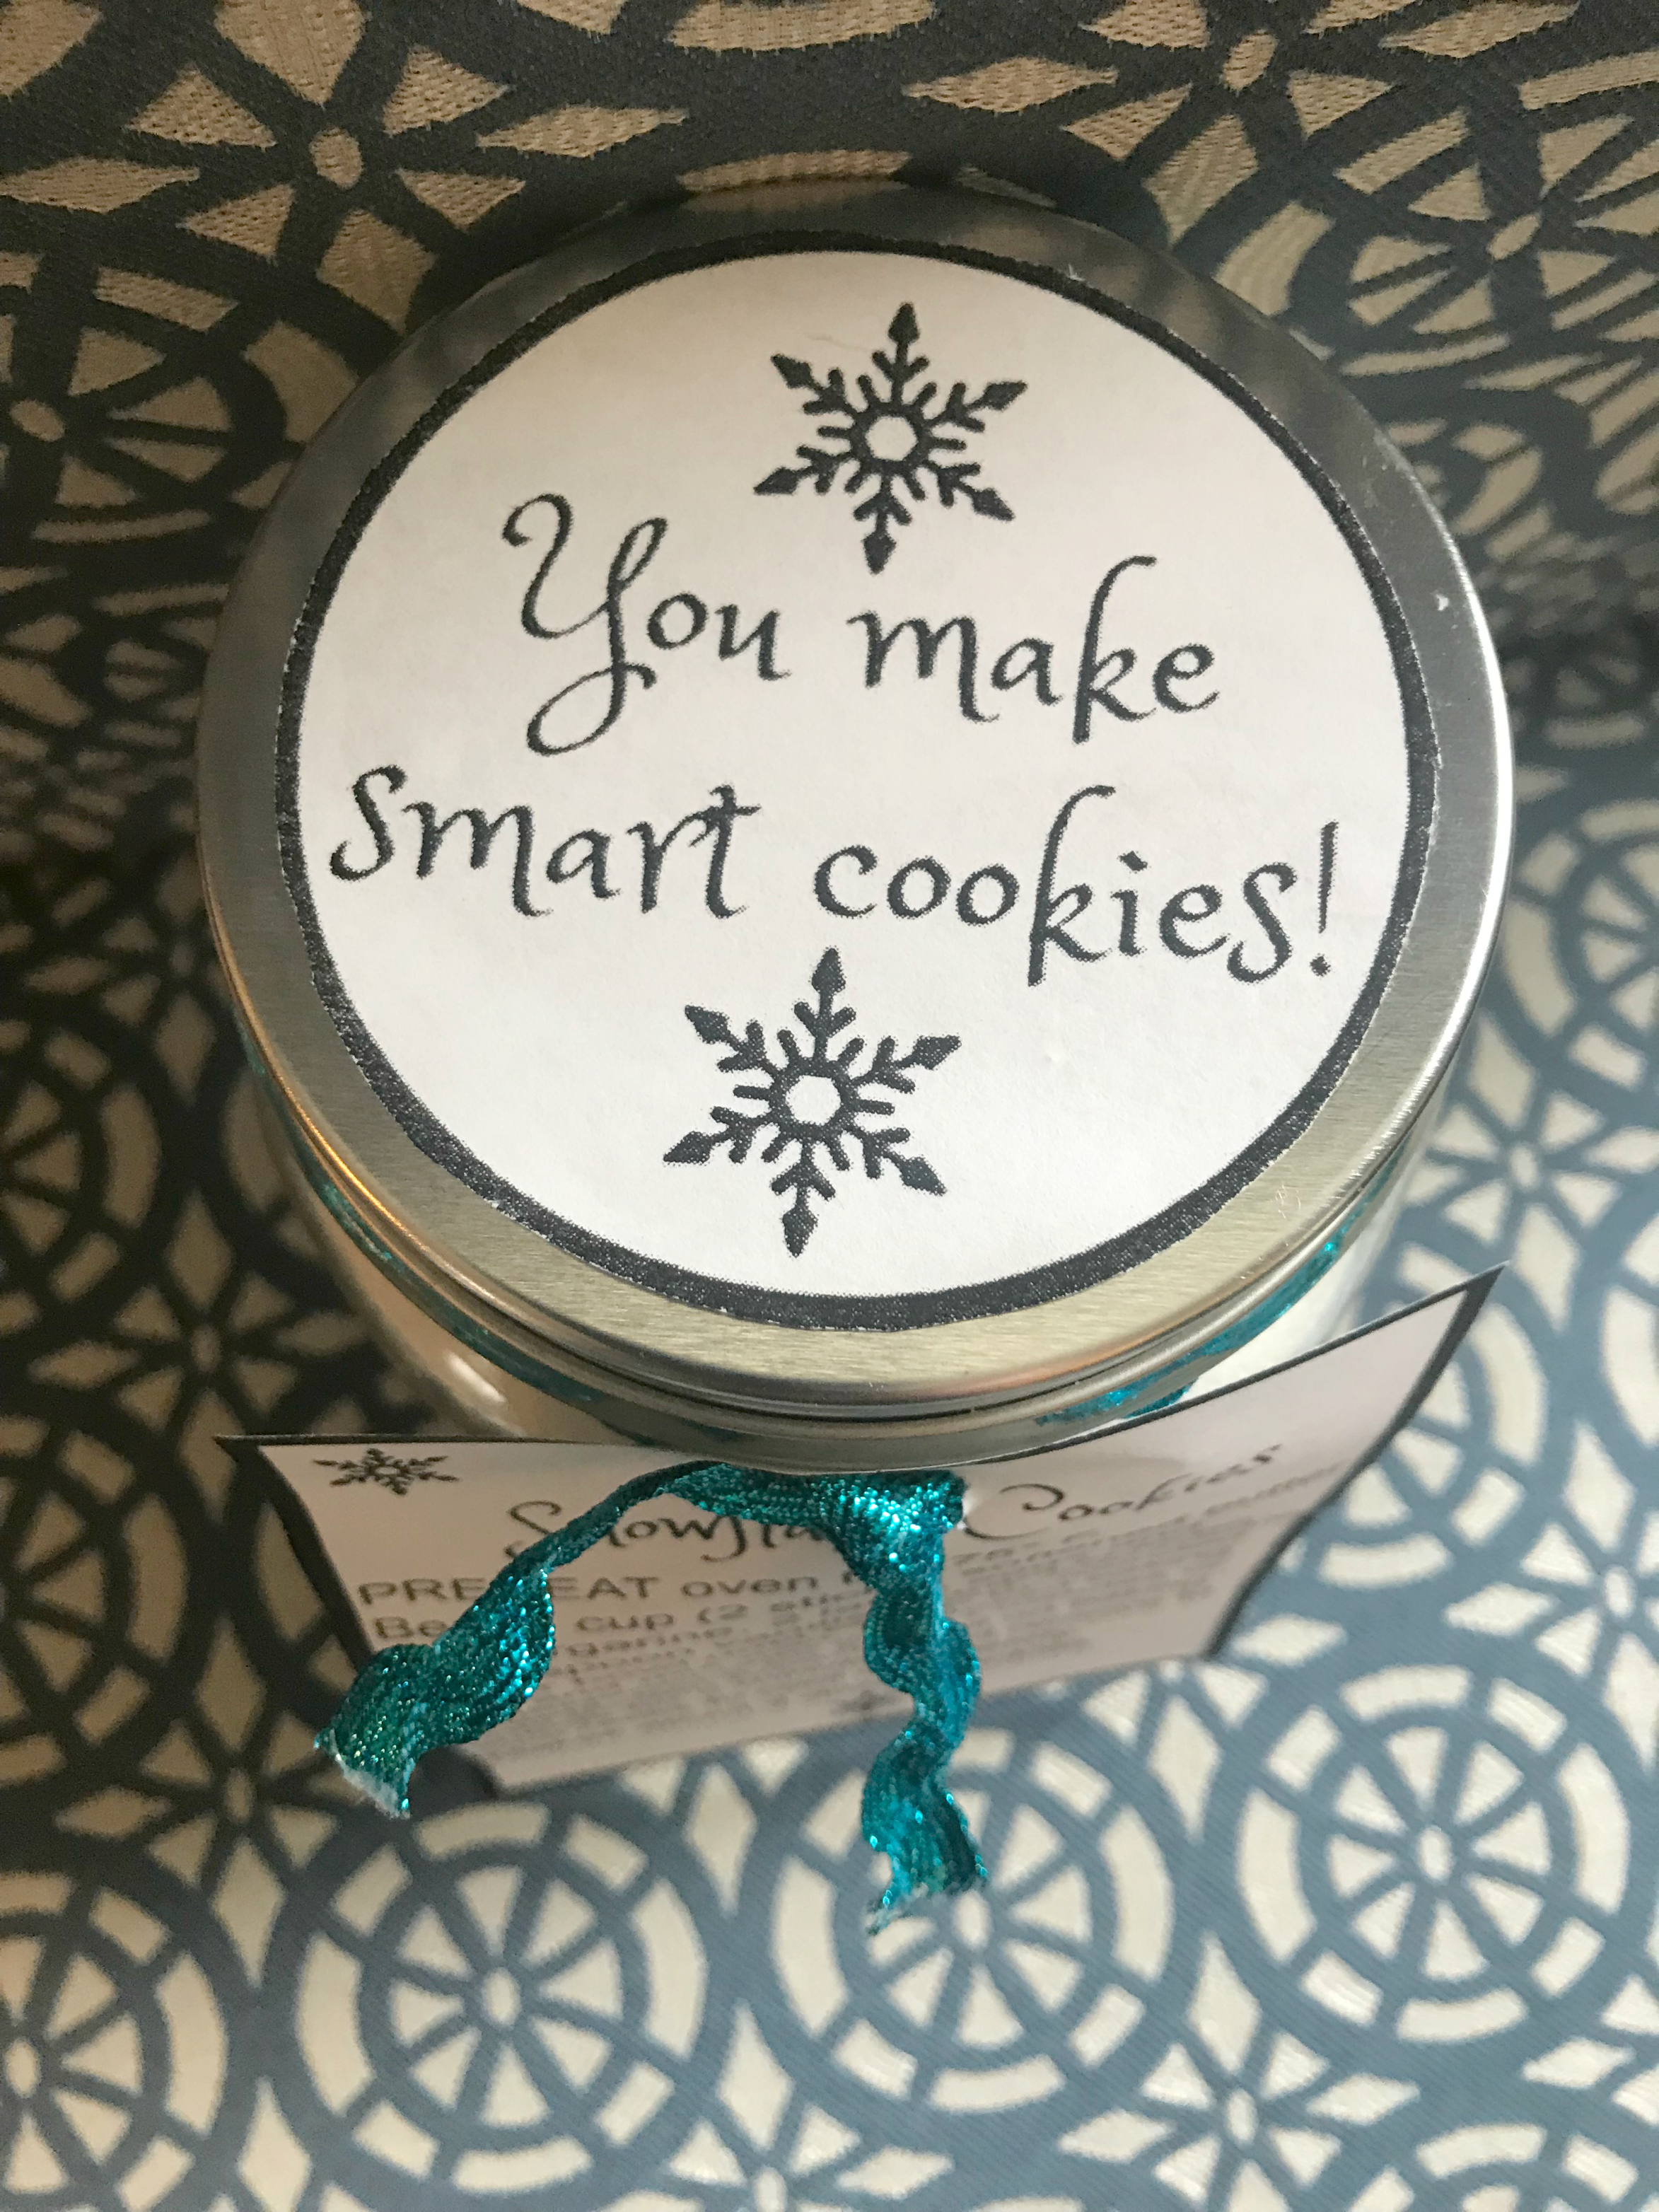 Snowflake cookies in a jar you make smart cookies label.